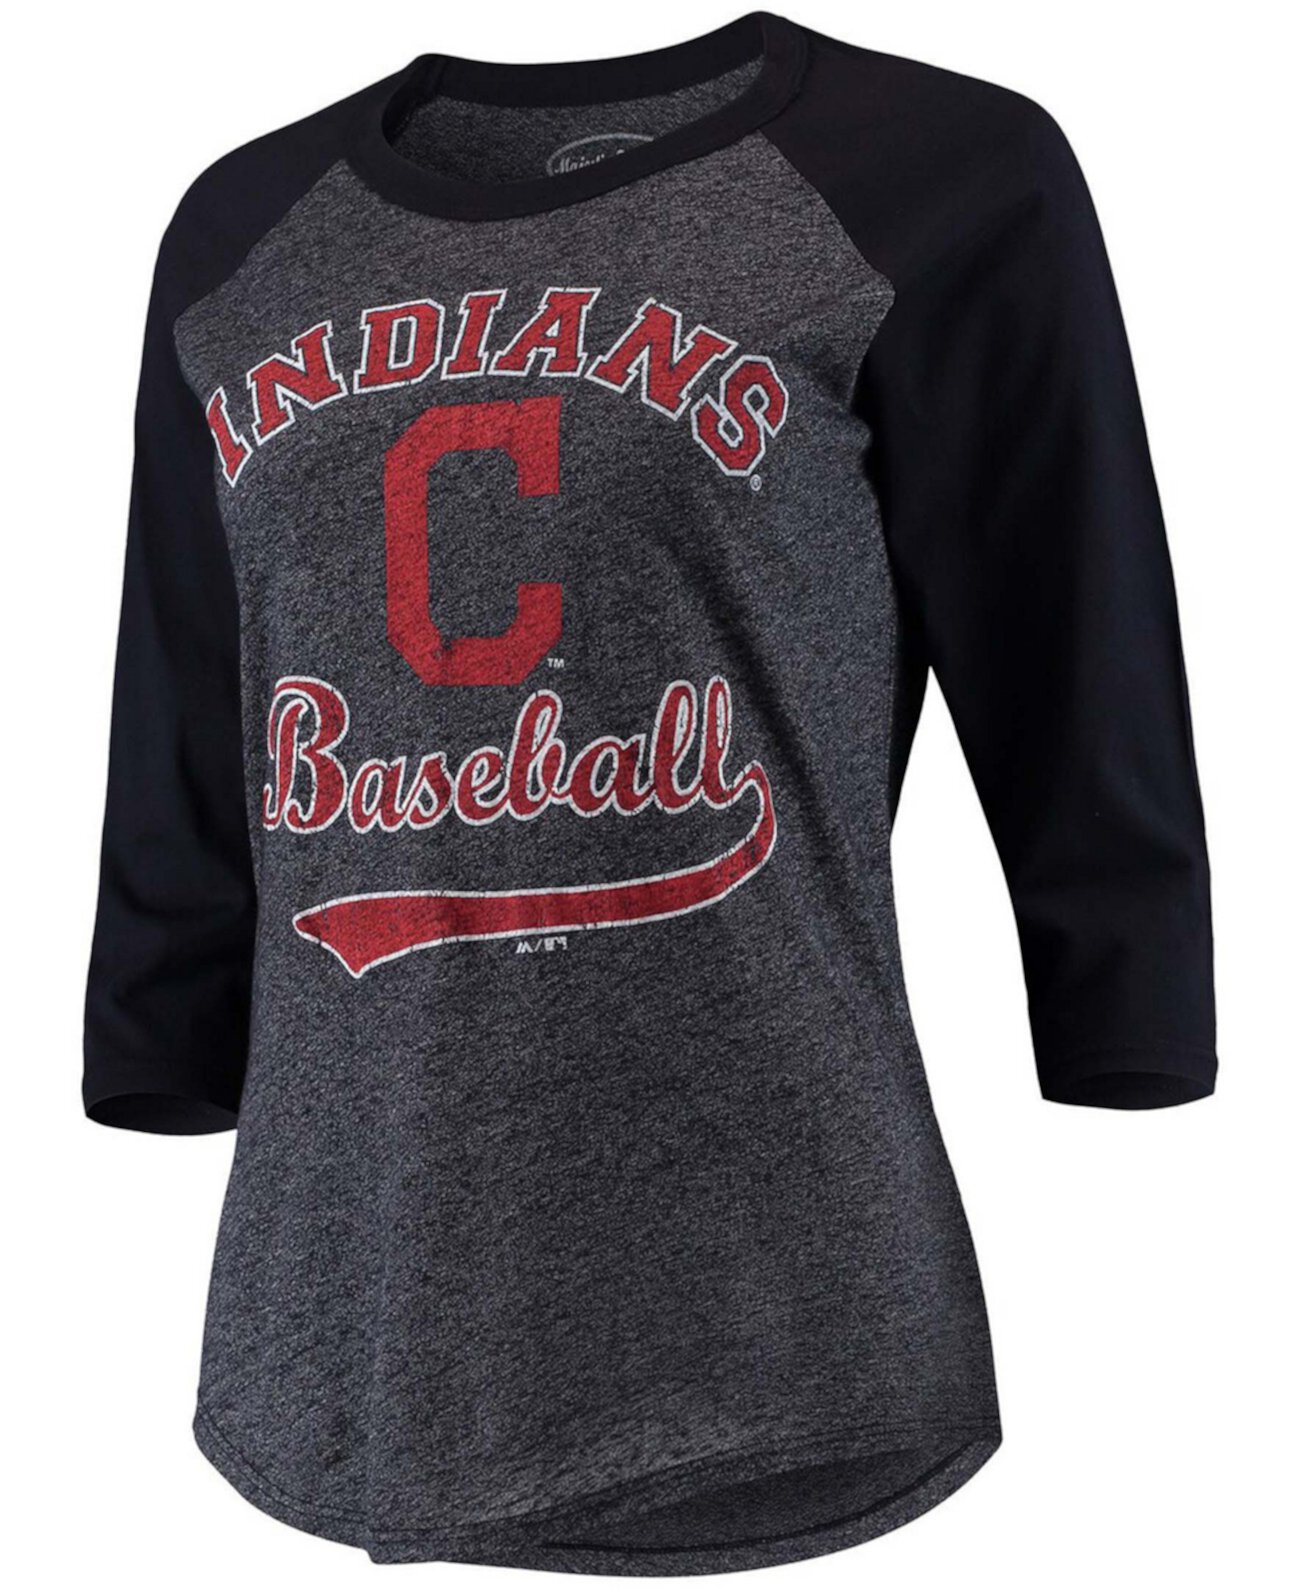 Женская футболка Cleveland Indians Team Baseball с рукавами реглан и три четверти рукавами реглан темно-синего цвета Majestic